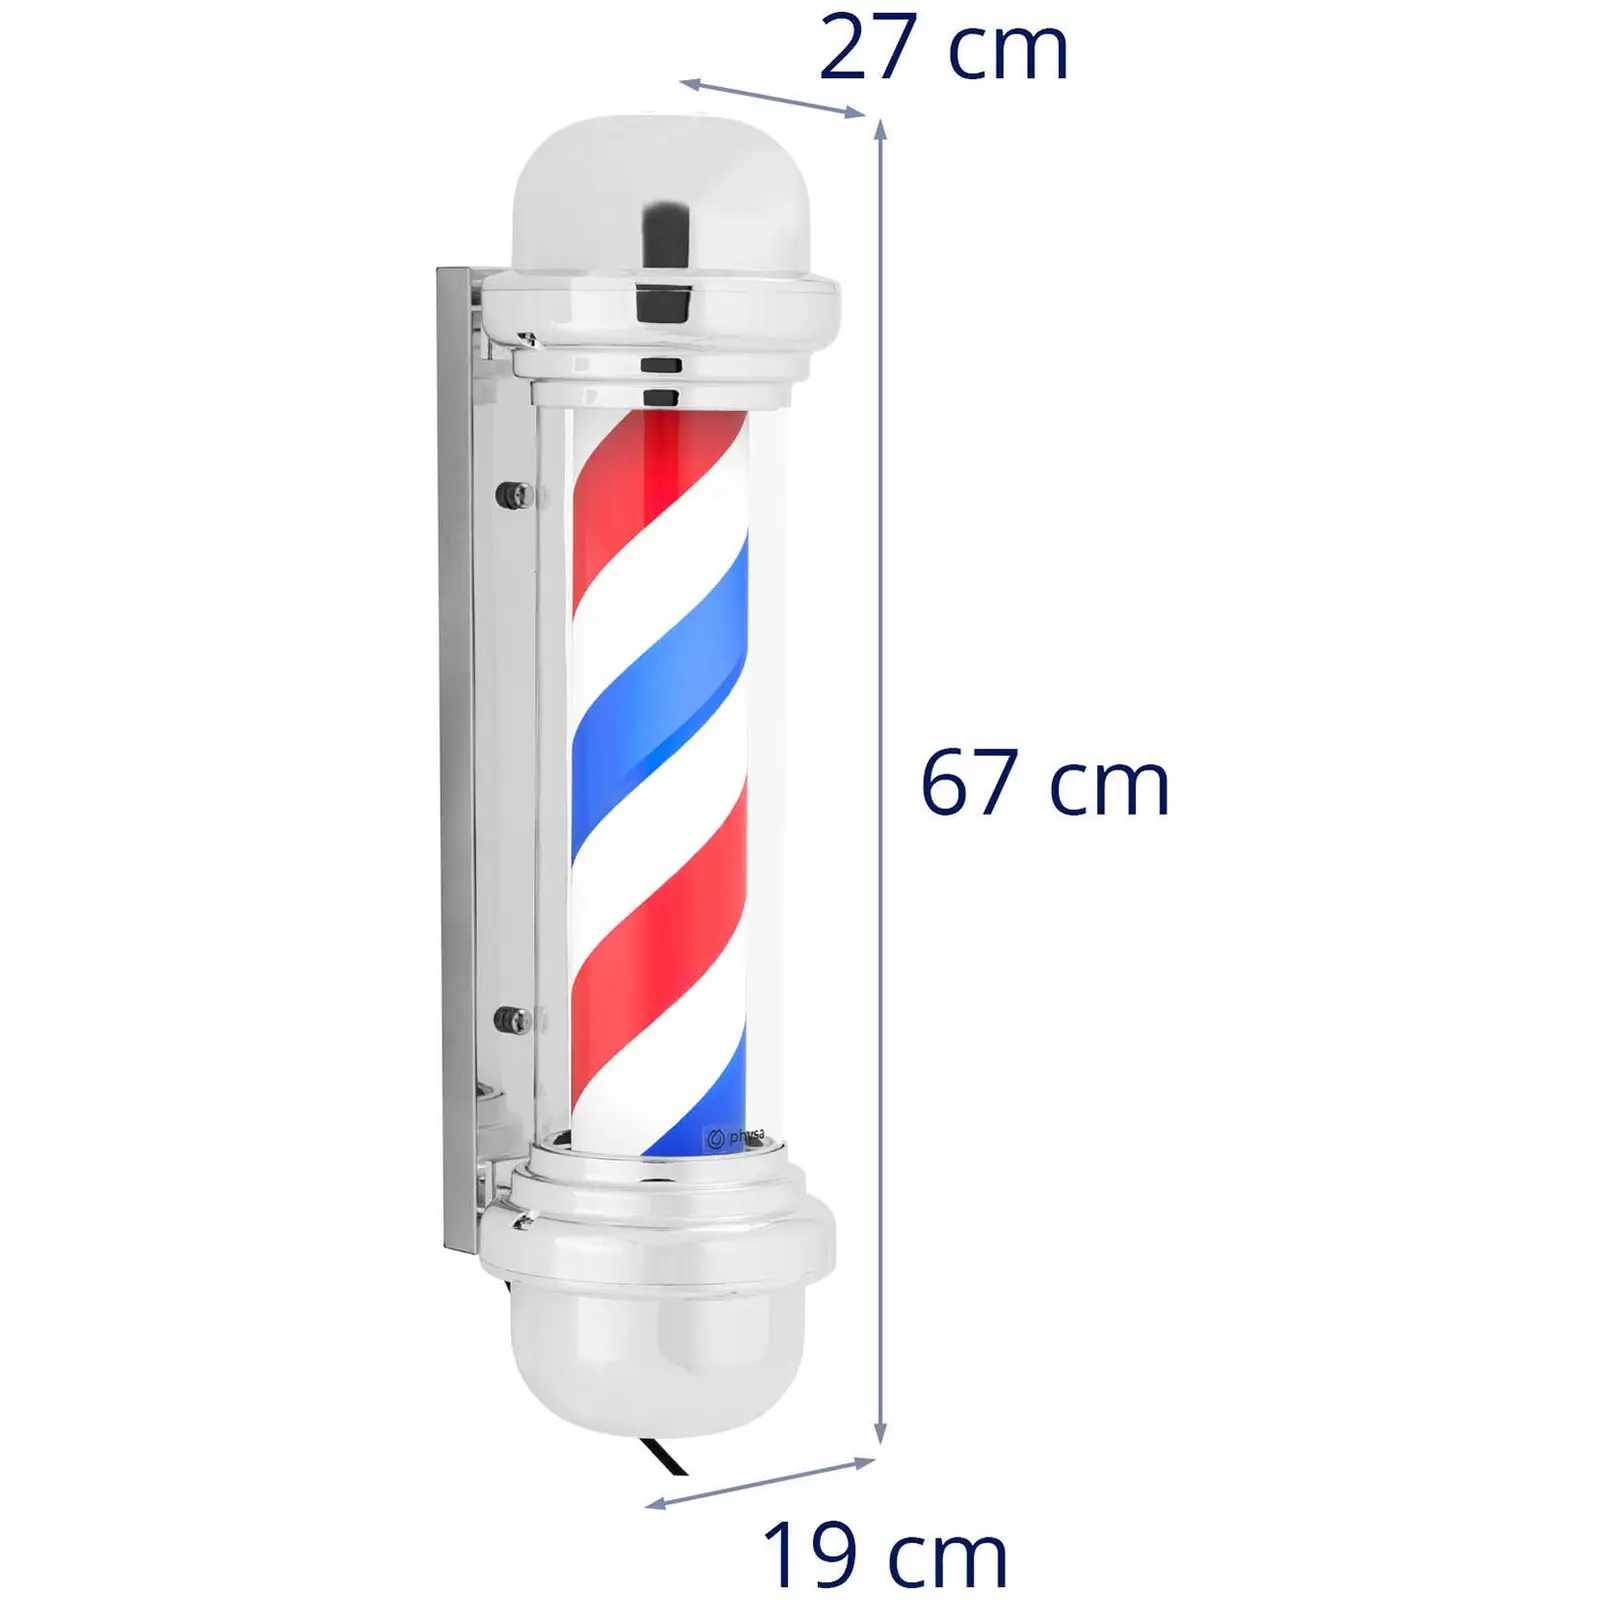 Barber pole - rotační a osvětlená - výška 380 mm - vzdálenost od stěny 25 cm - stříbrný rám